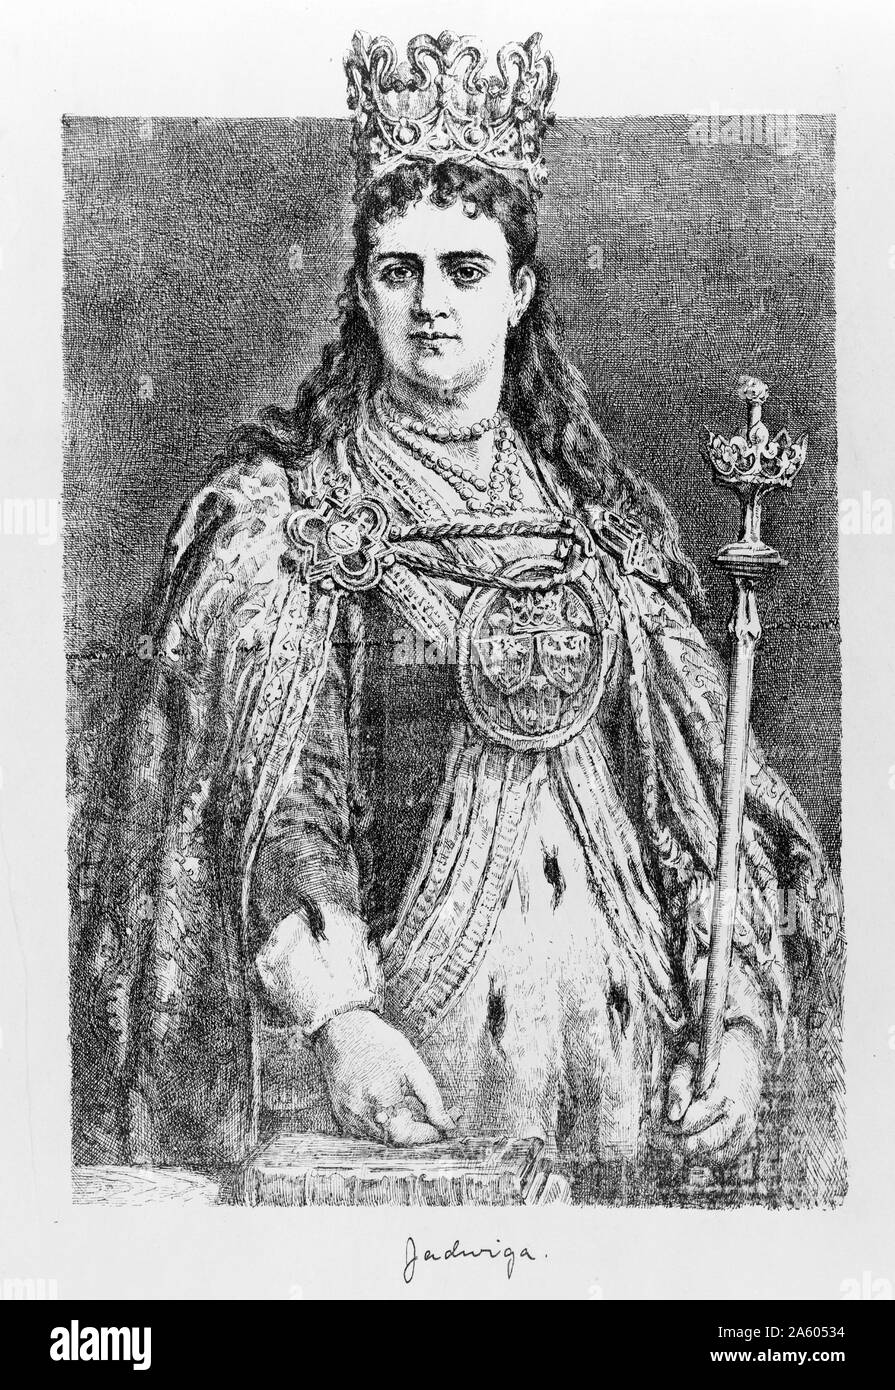 Reine Jadwiga portant sa cape et couronne et tenant son sceptre, 1391. Jadwiga était le monarque de la Pologne et a été le souverain dans son propre droit - son titre officiel était 'roi' plutôt que de 'queen' pour en tenir compte. Quand elle est morte en couches son mari a réussi à conserver le trône pendant 35 ans, malgré le fait qu'il n'avait pas de réel, de solides prétentions au trône. Banque D'Images